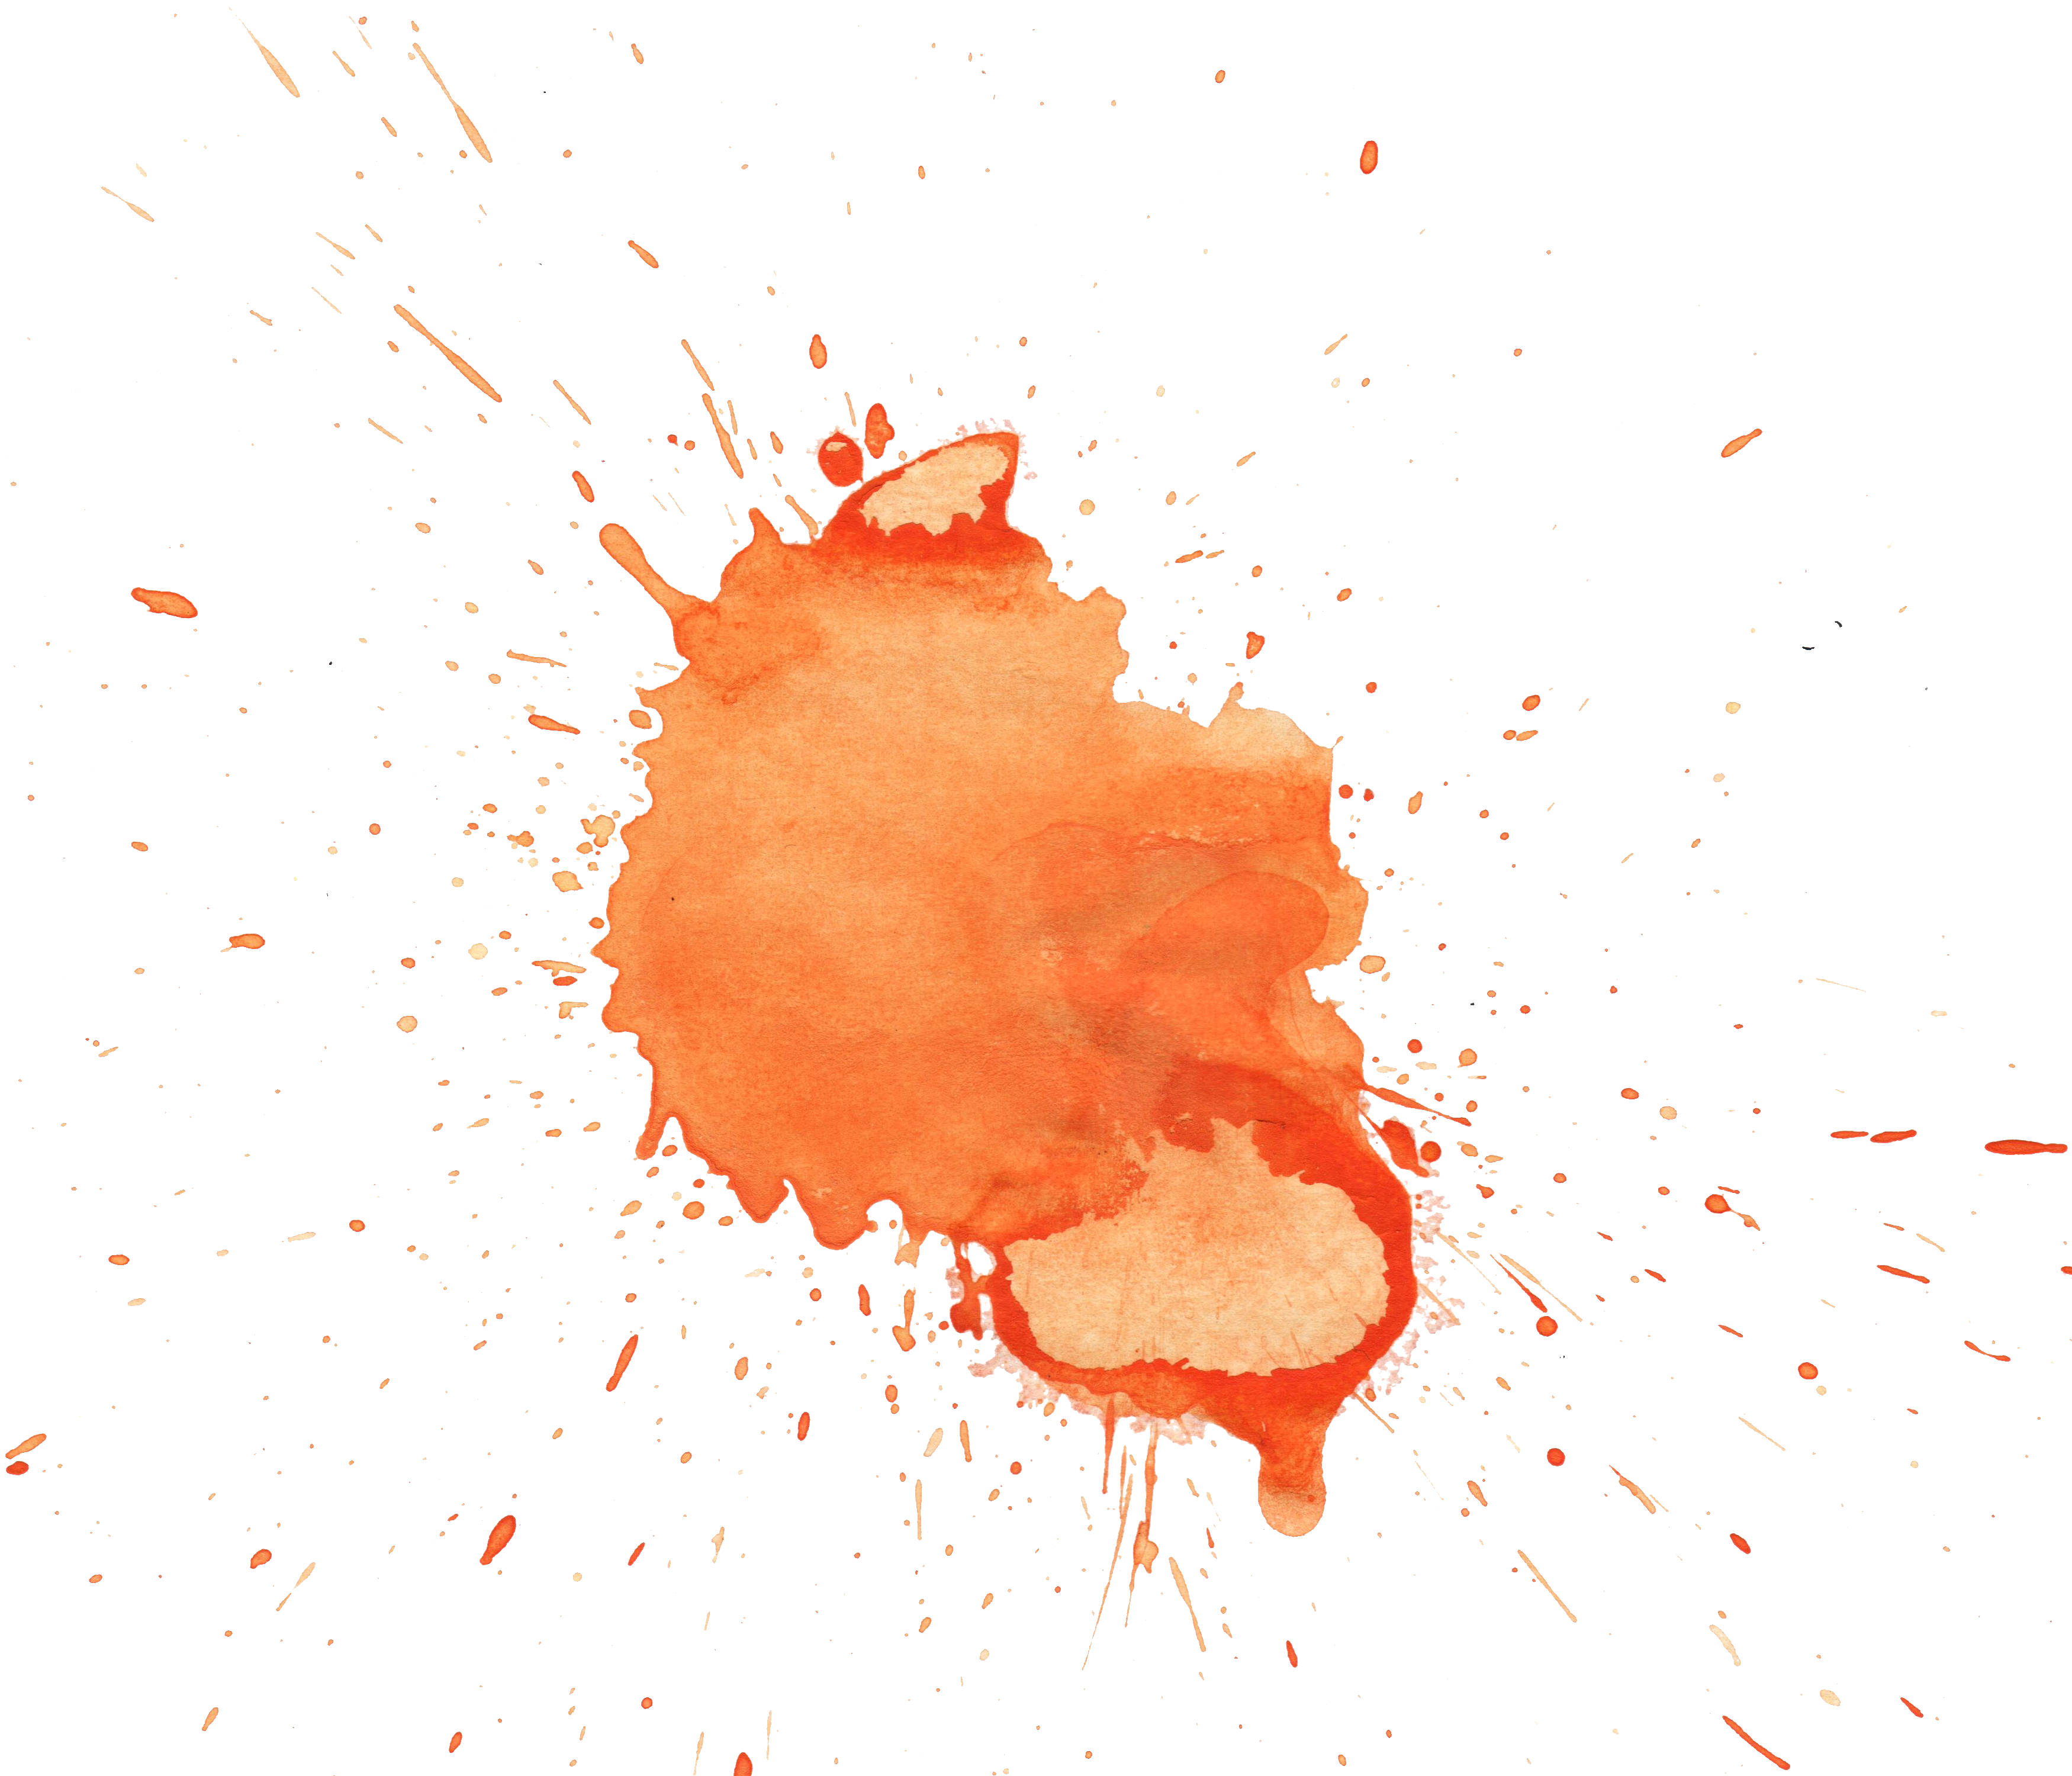 7 Orange Watercolor Splatter Texture (JPG) | OnlyGFX.com